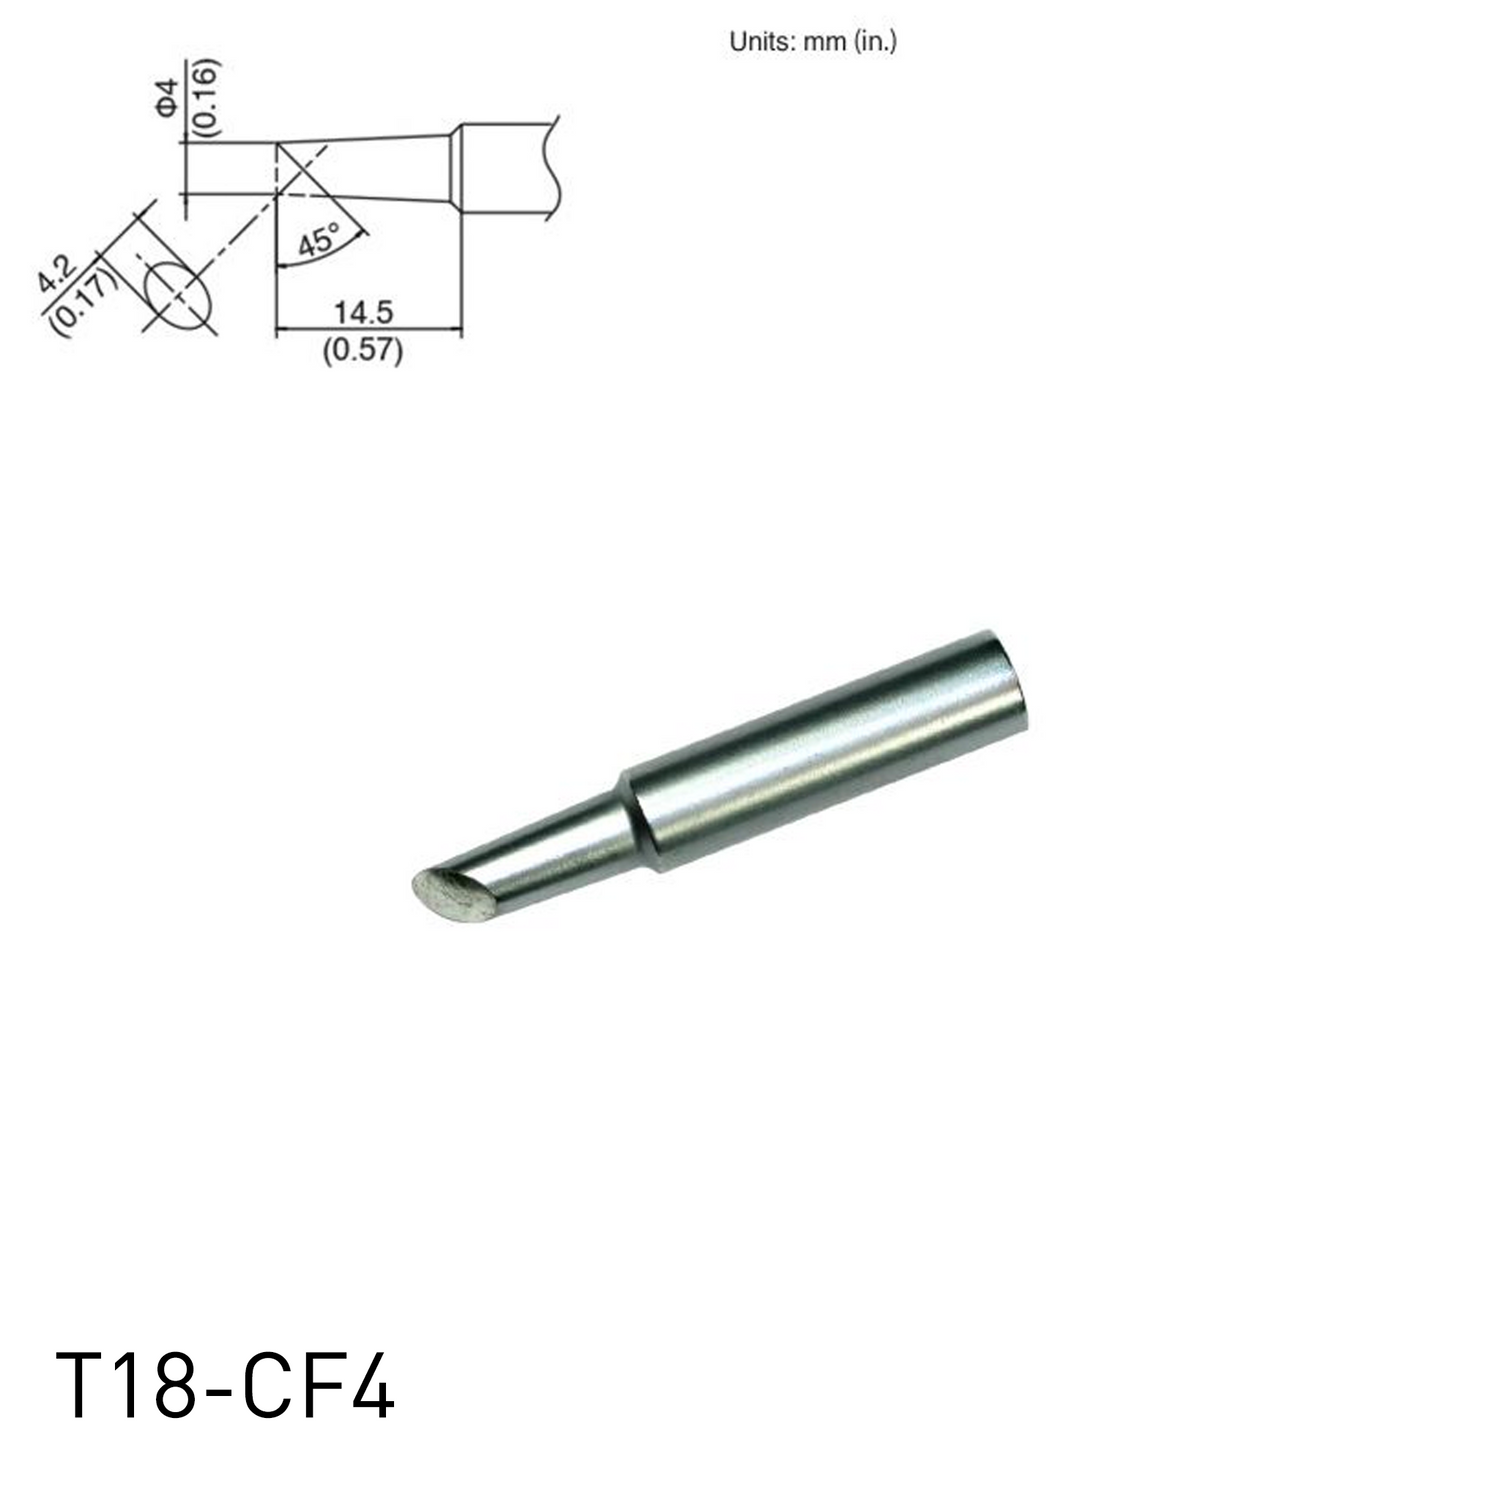 Hakko soldering iron tip T18-CF4 for soldering station FX888, FX888D, FX889, FR701, FR702, FX600 & soldering iron FX8801, FX600